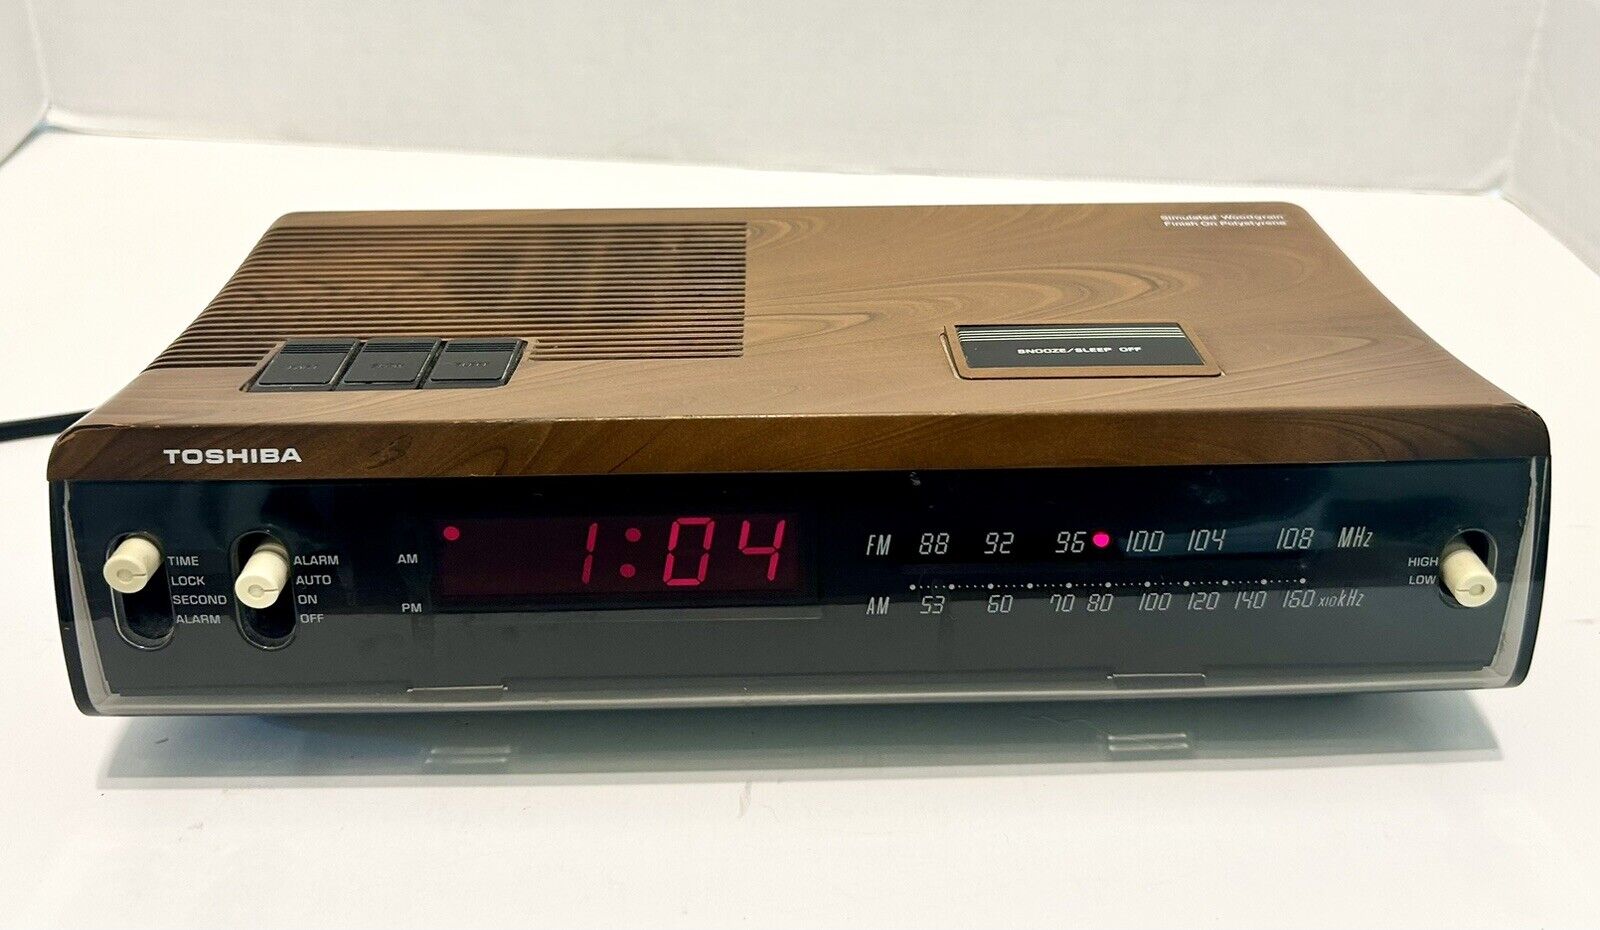 Toshiba Alarm Clock Radio Vintage Wood Grain Model RC-7180F Tested 